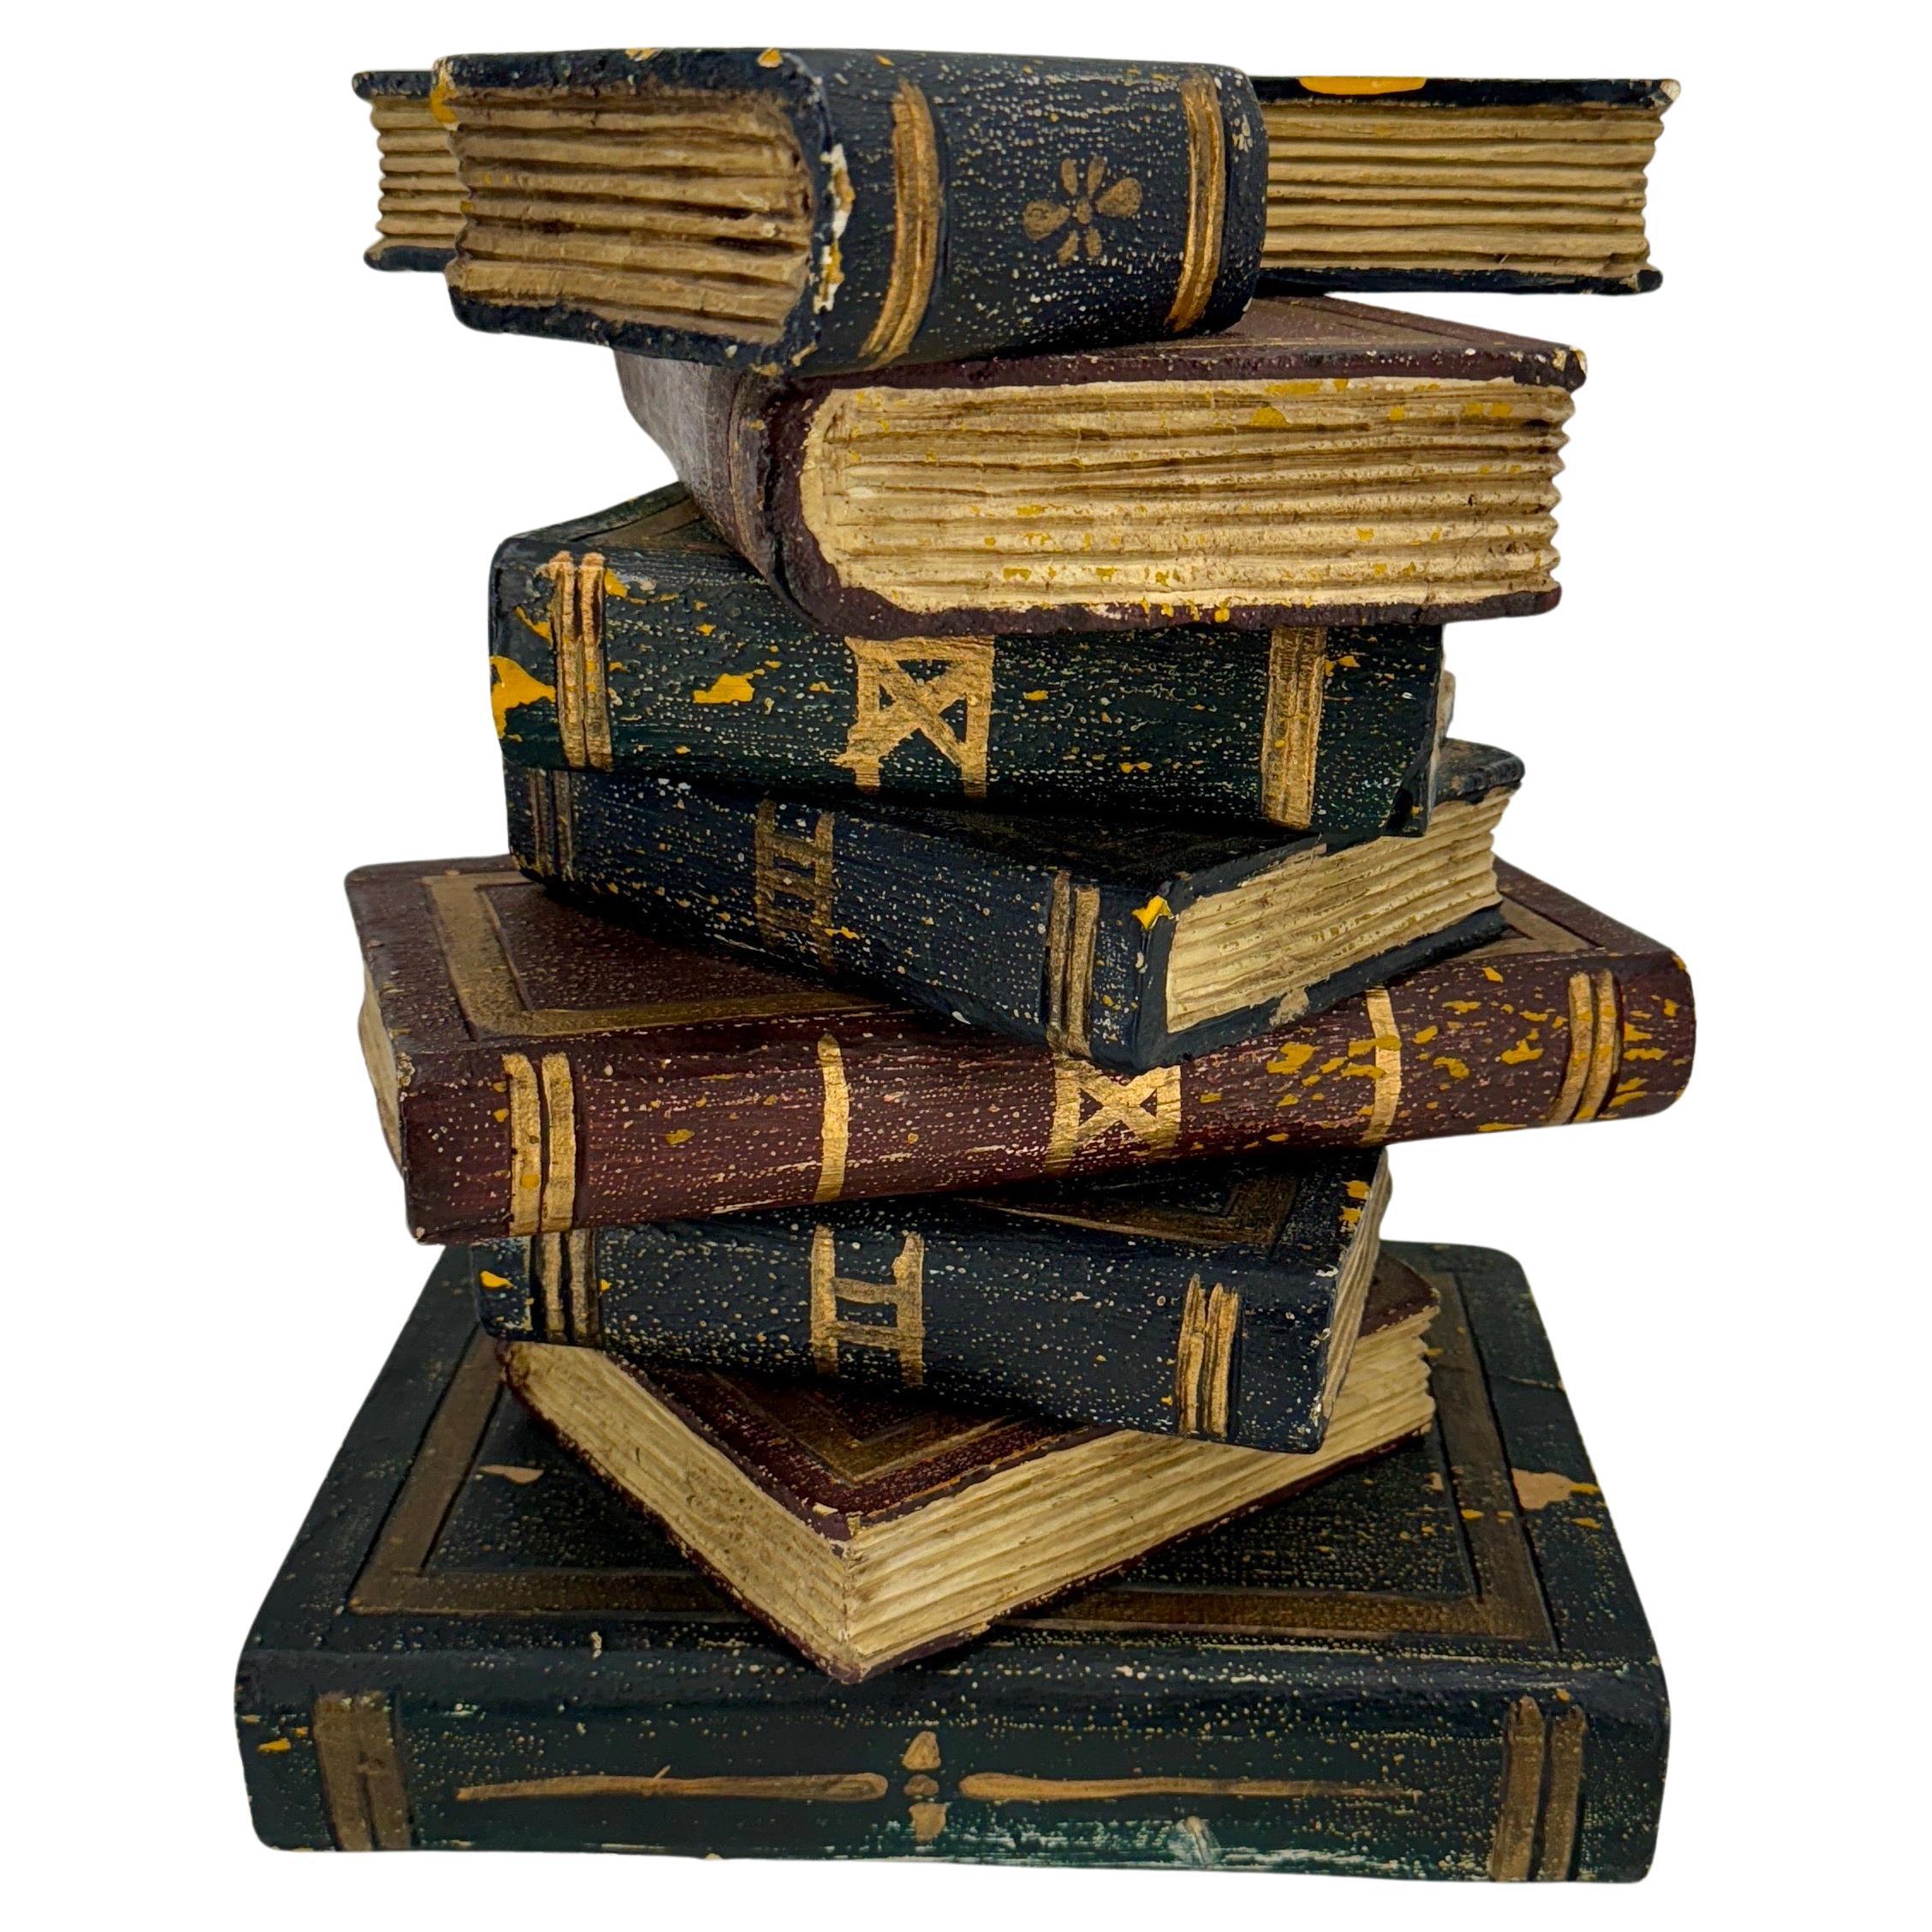  Fausse sculpture de livres empilés Table d'appoint en bois